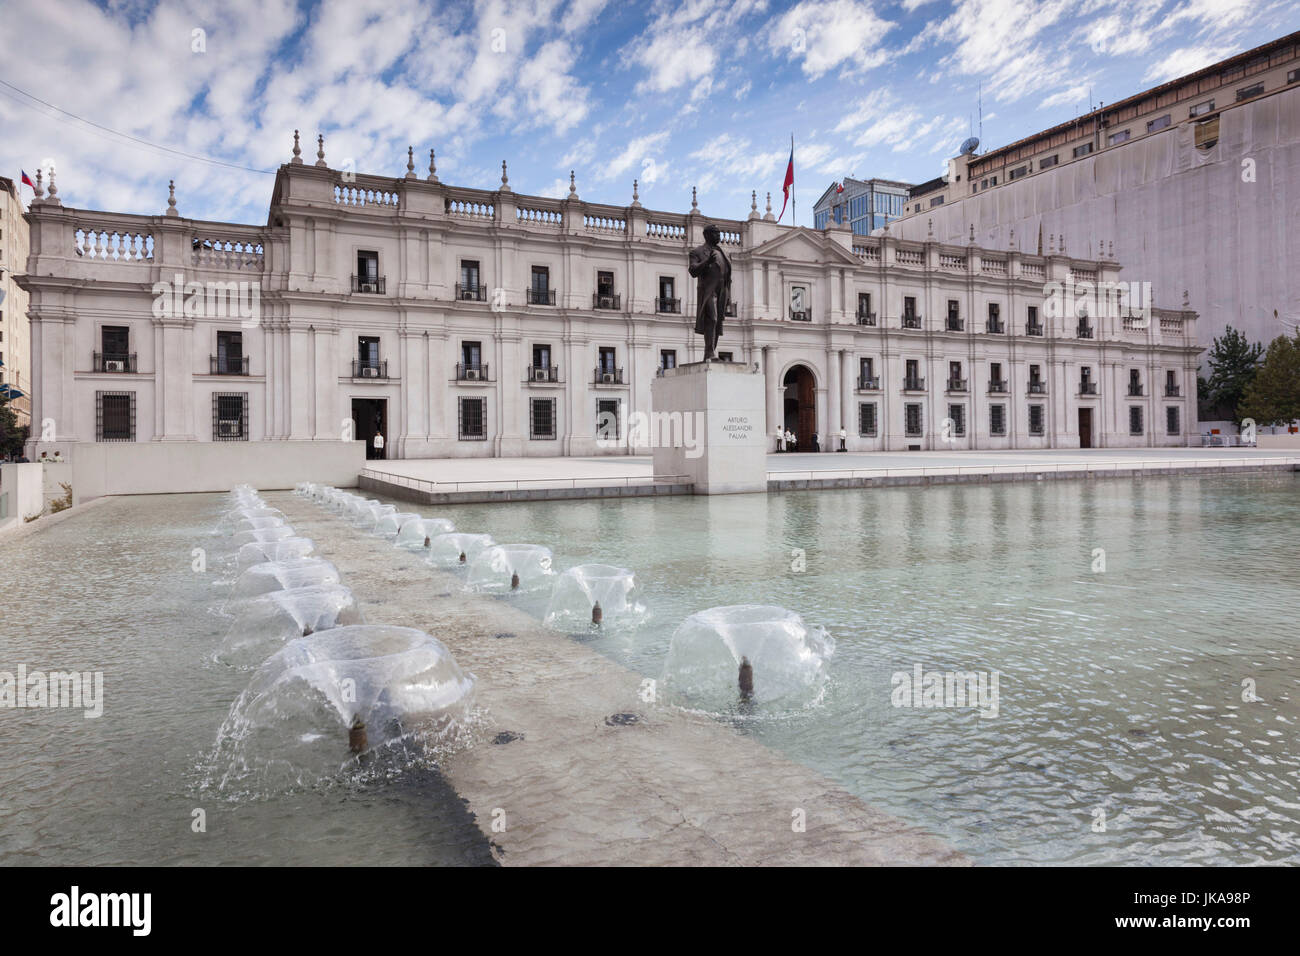 Chile, Santiago, Palacio de la Moneda, Presidential Palace Stock Photo